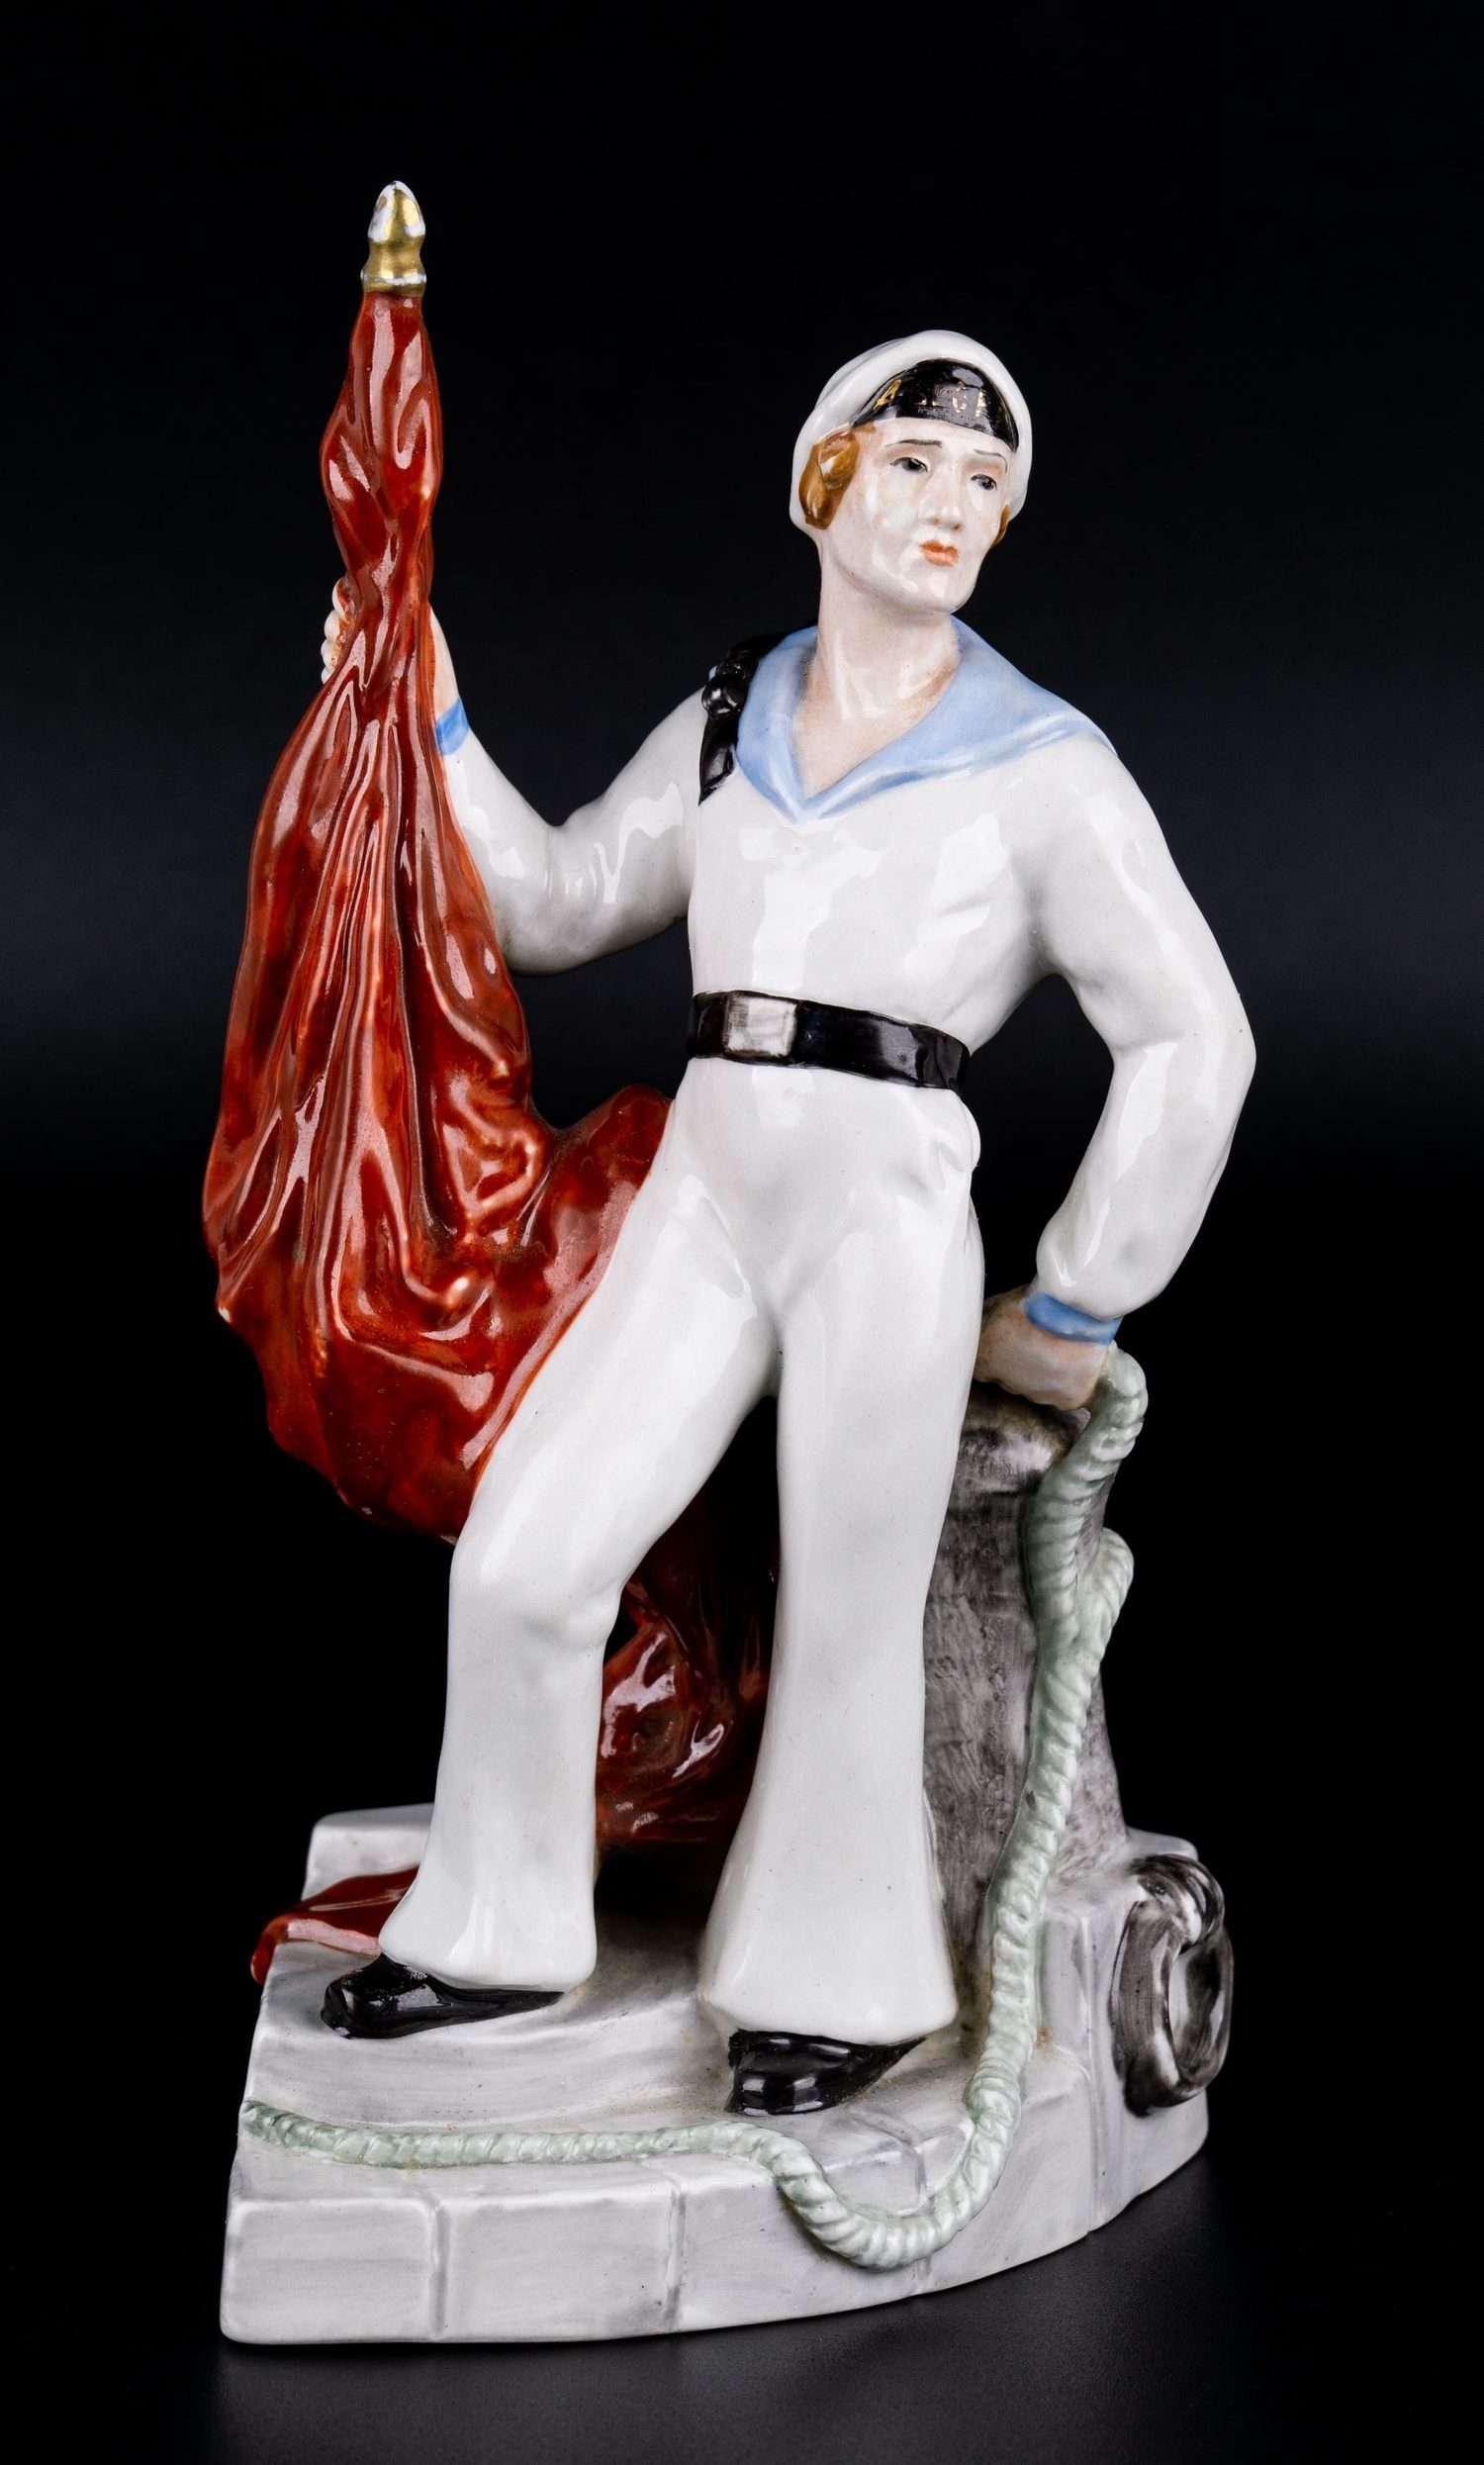 Скульптура «Матрос с красным знаменем». По модели Н.Я. Данько.